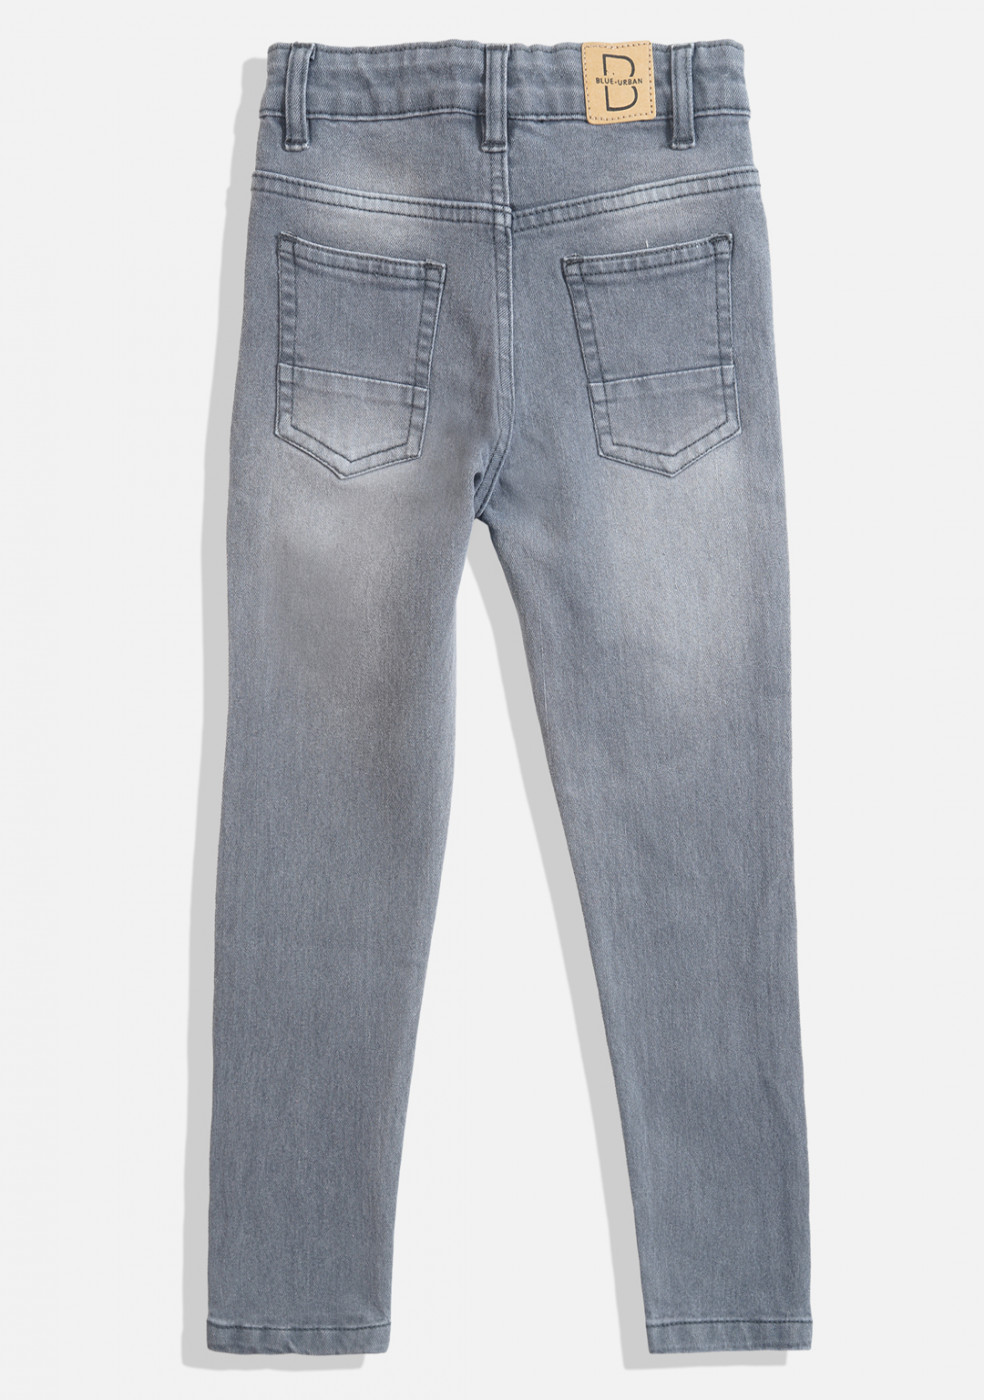 Gray Denim Jeans For Boys